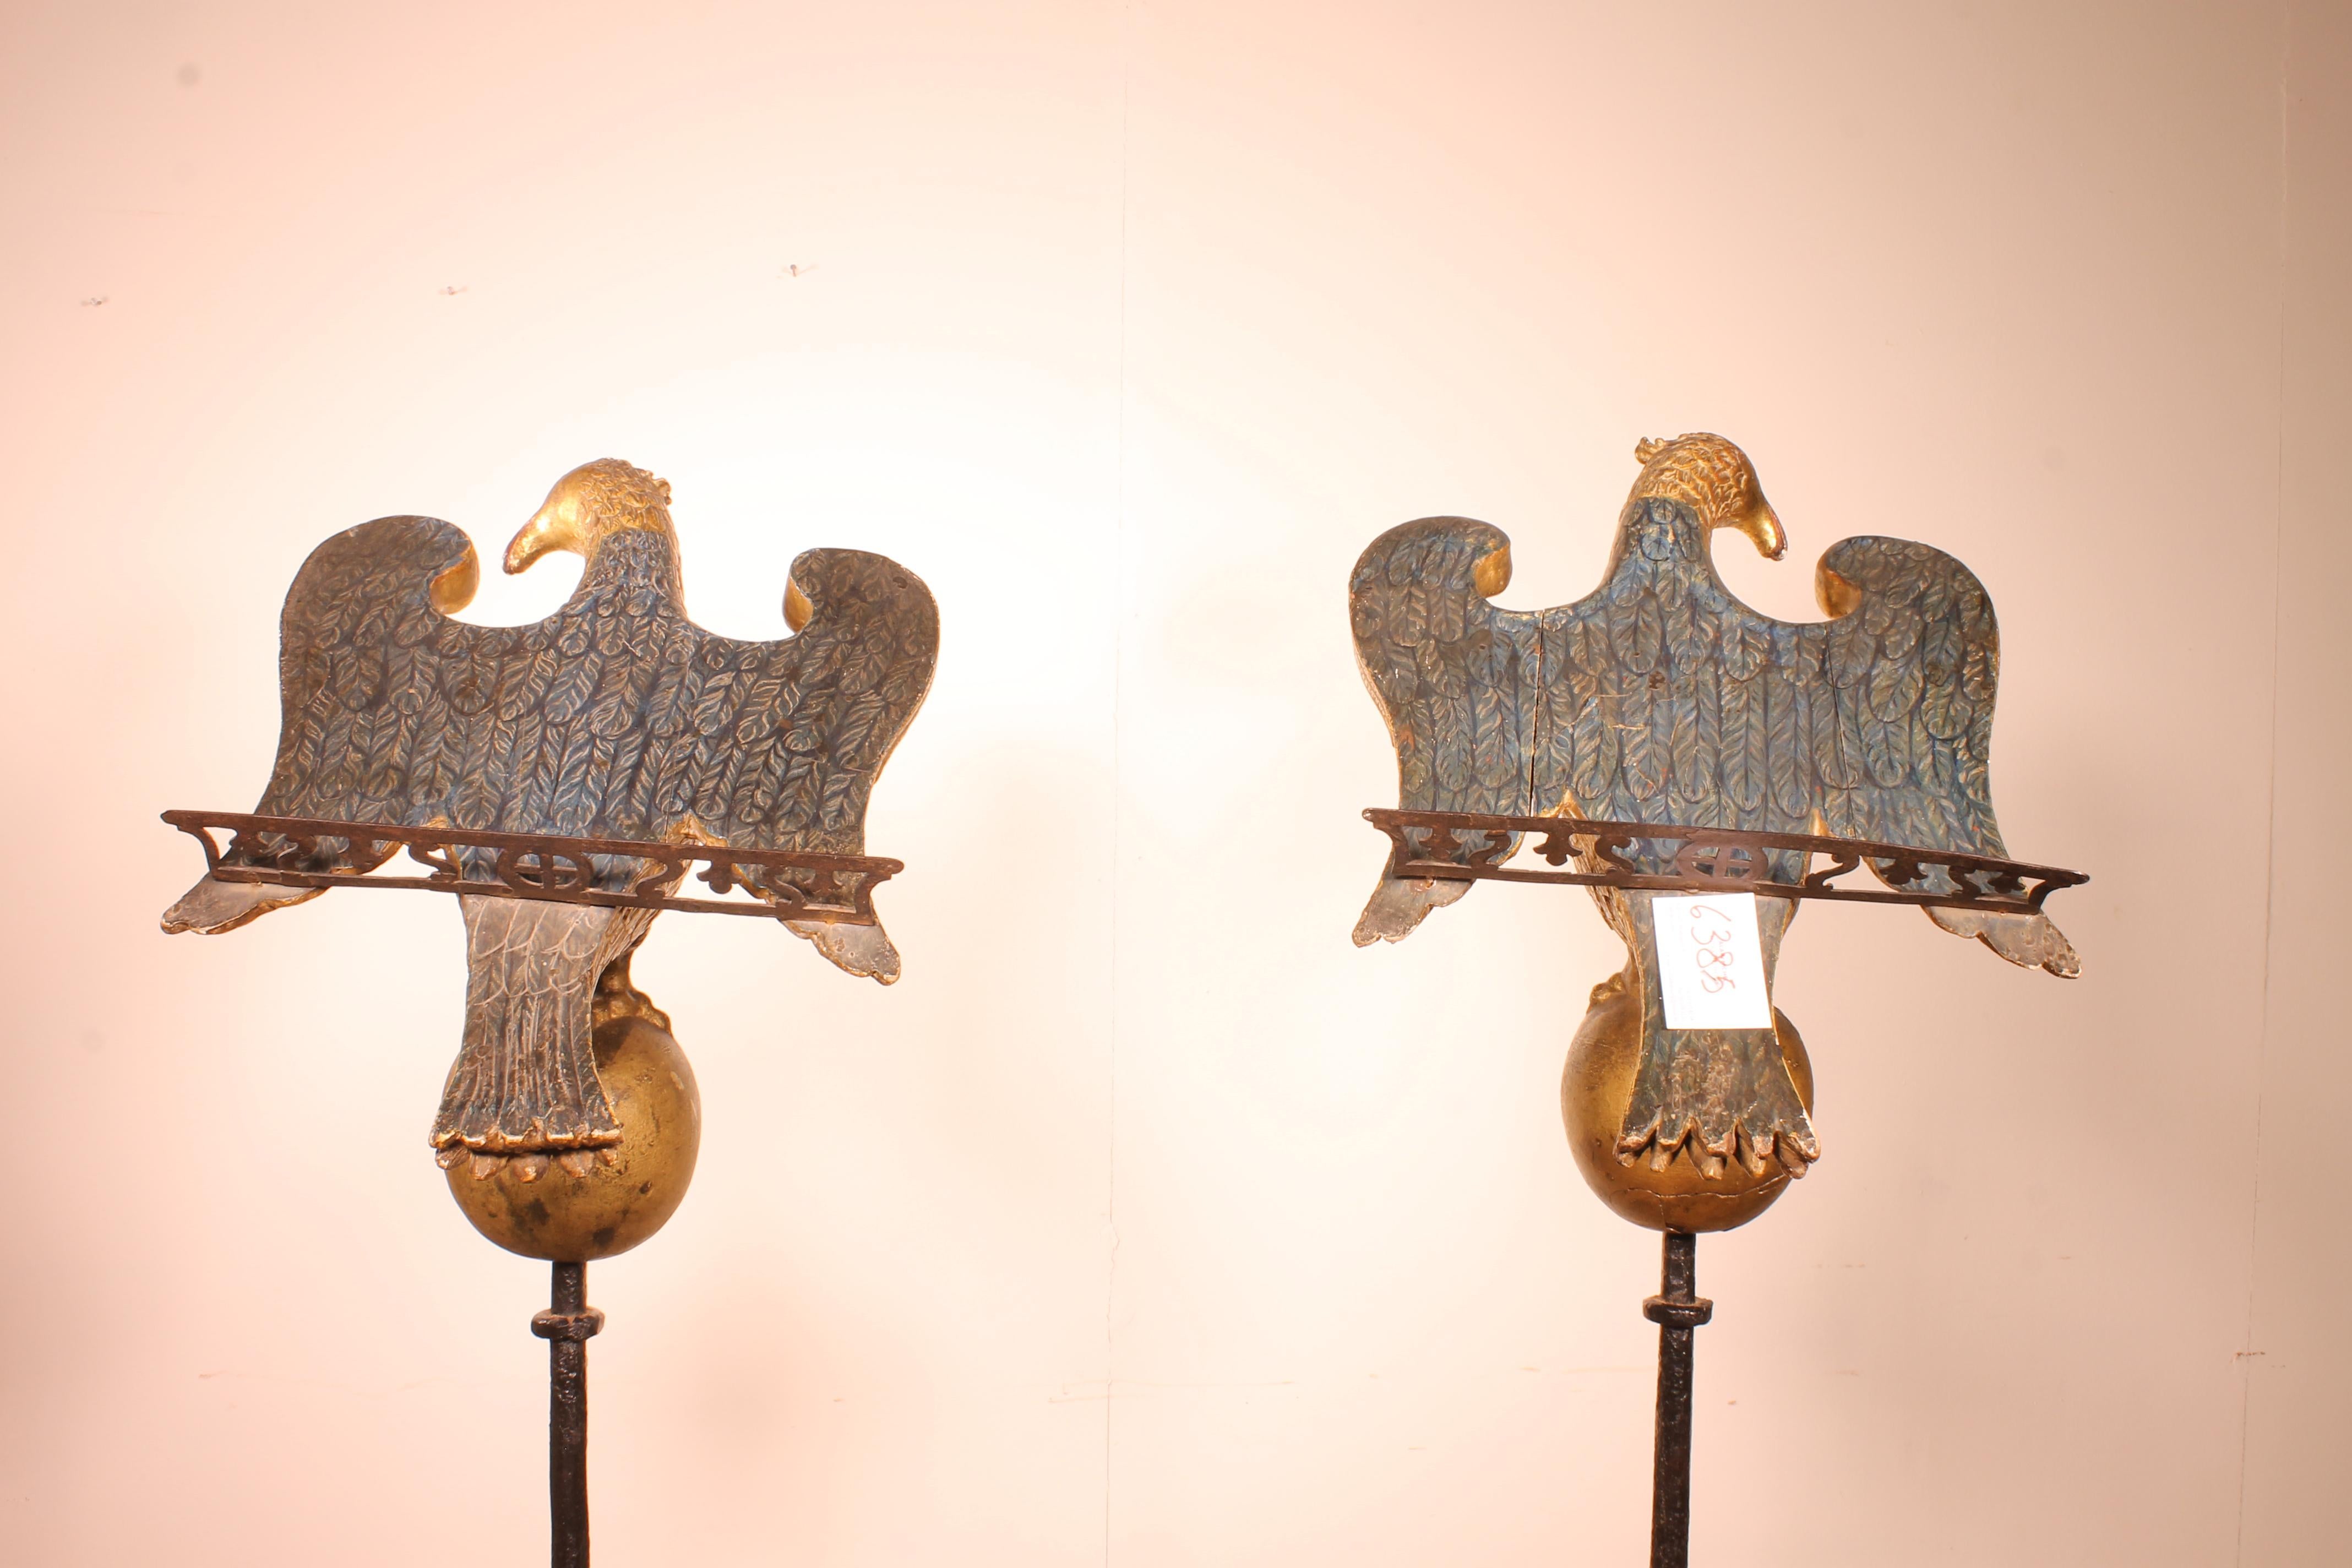 Außergewöhnliches Paar Aigles aus dem 16. Jahrhundert aus Italien 
Wunderschönes Paar geschnitzter Holzschlösser aus der italienischen Renaissance. Sehr feine und zarte Skulptur
Das Adlerpaar diente zur Zeit des Rednerpults in einer Kirche.